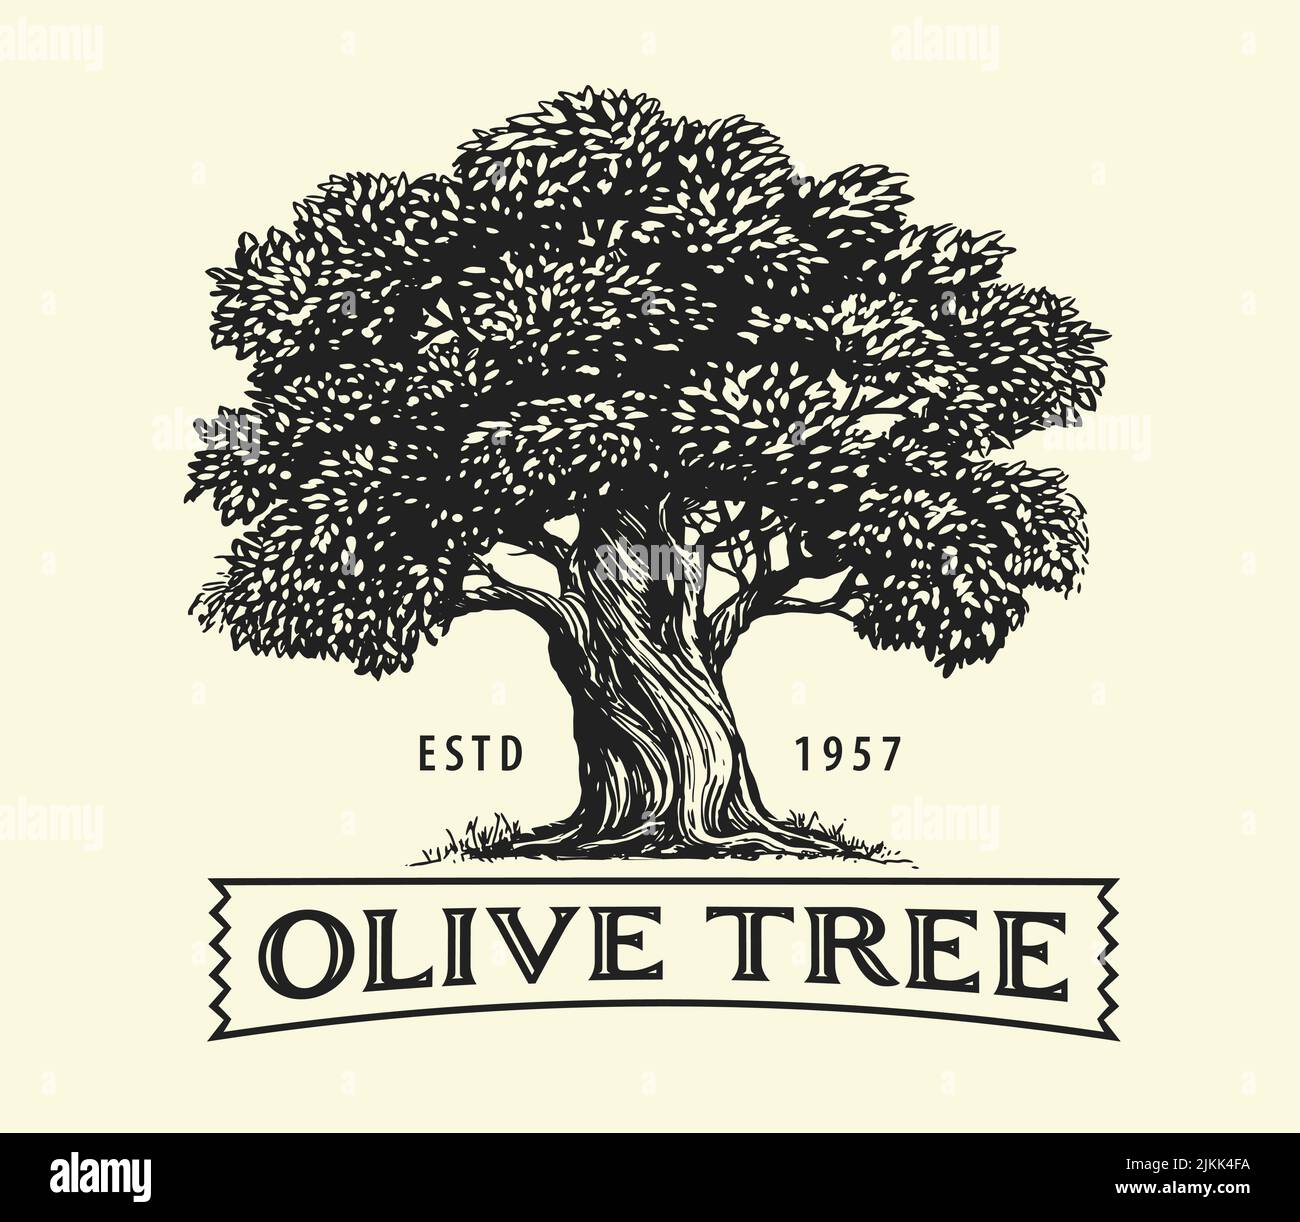 Olivo con aceitunas en ramas. Dibujo del emblema del aceite de oliva. Ilustración vectorial dibujada a mano en estilo de grabado vintage Ilustración del Vector